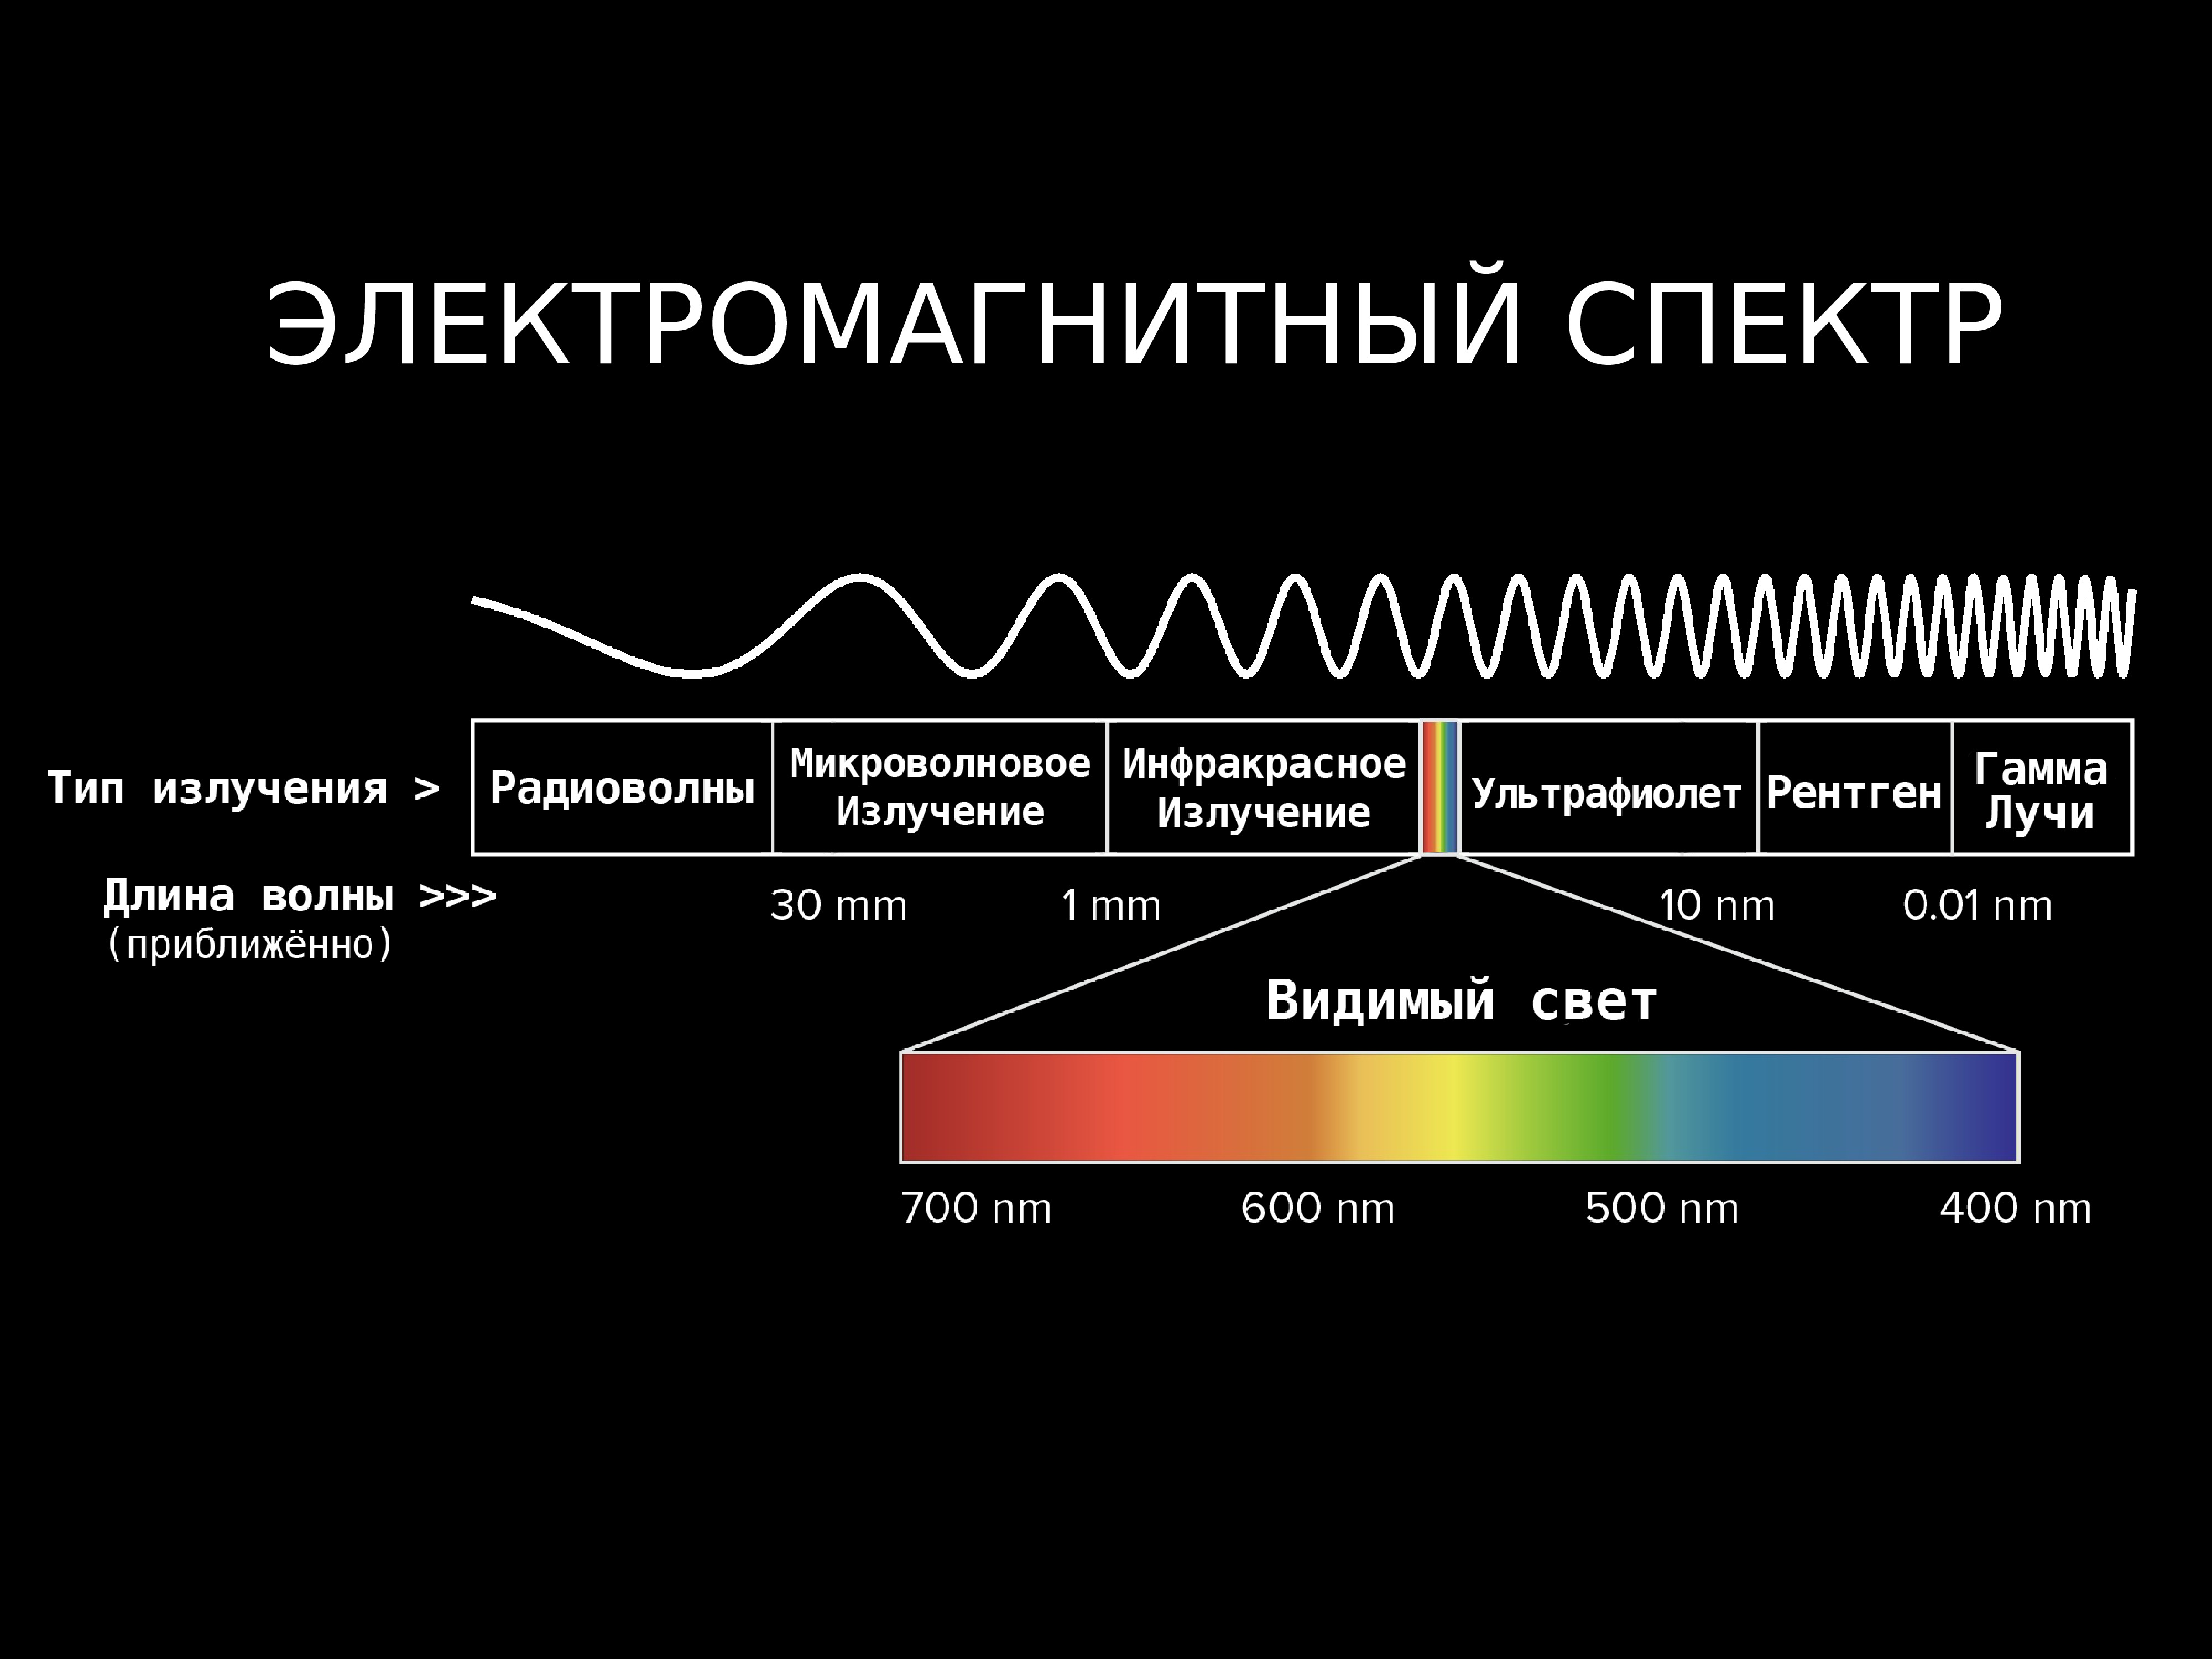 Диапазоны спектра электромагнитного излучения